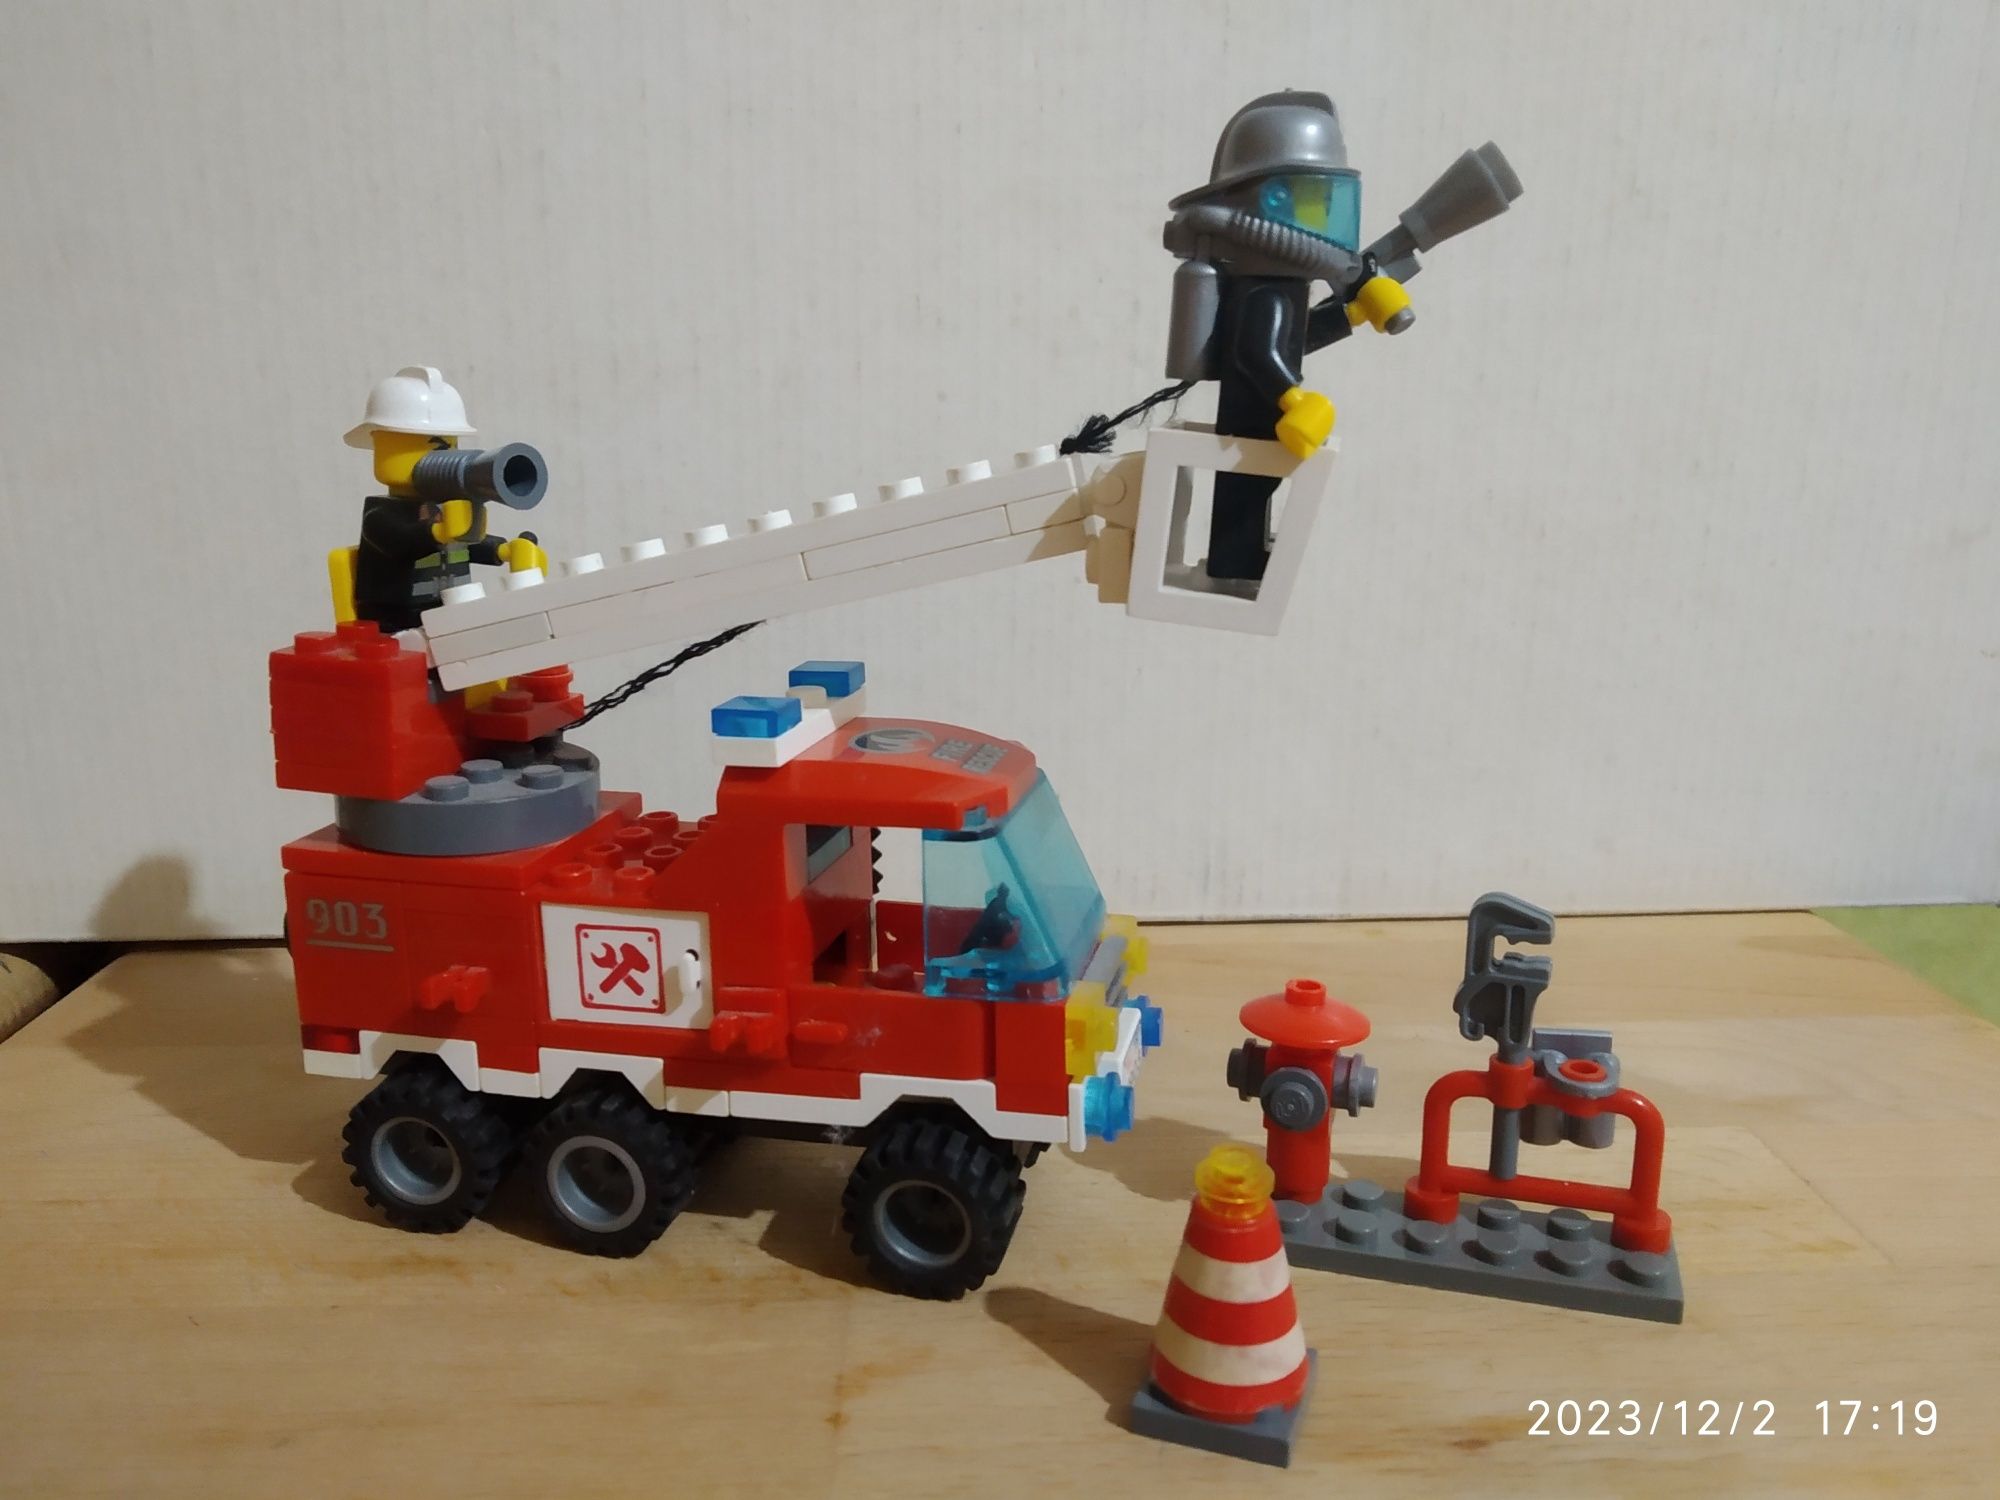 Конструктор Brick Пожарная машина 130 деталей 2 пожарных.